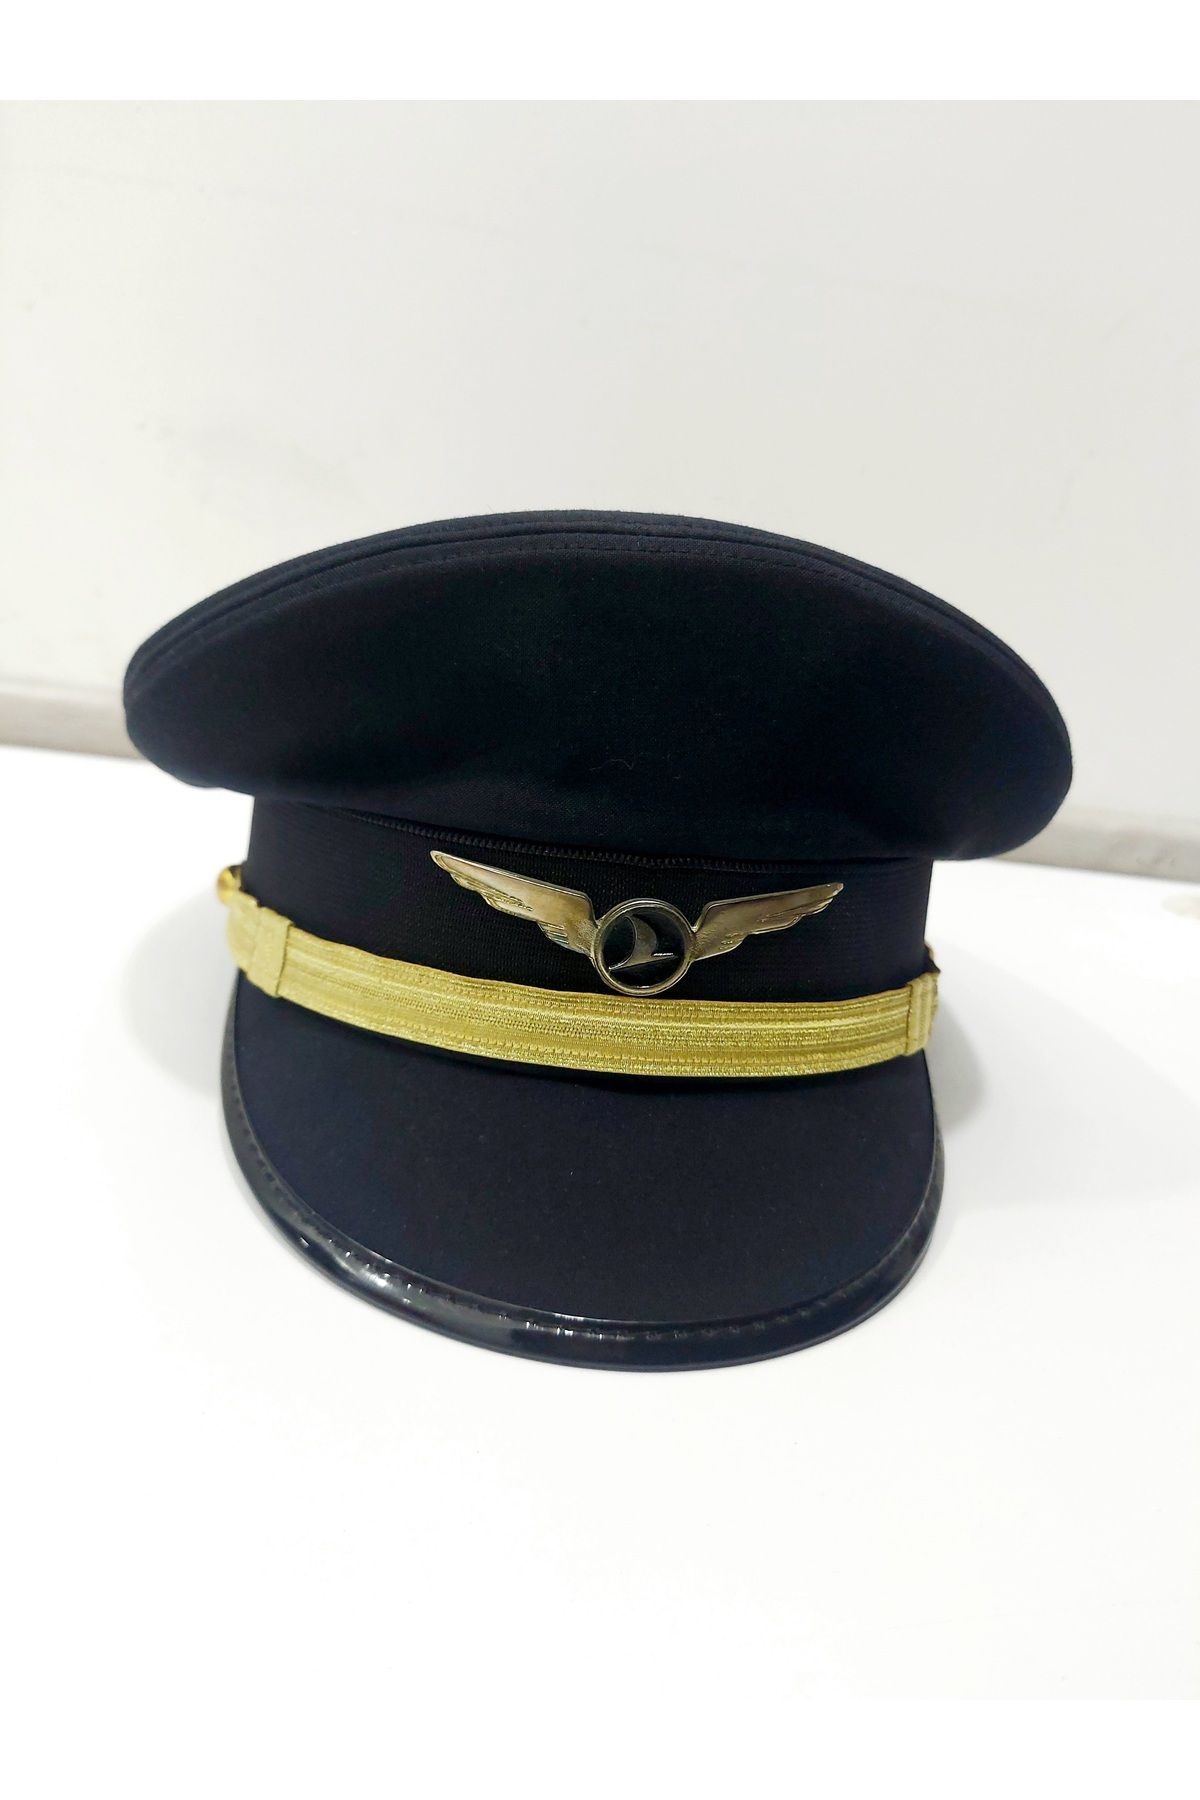 Havacı Uçuş Dünyası Türk Hava Yolları , Thy Logolu , Pilot - First Officer Şapkası